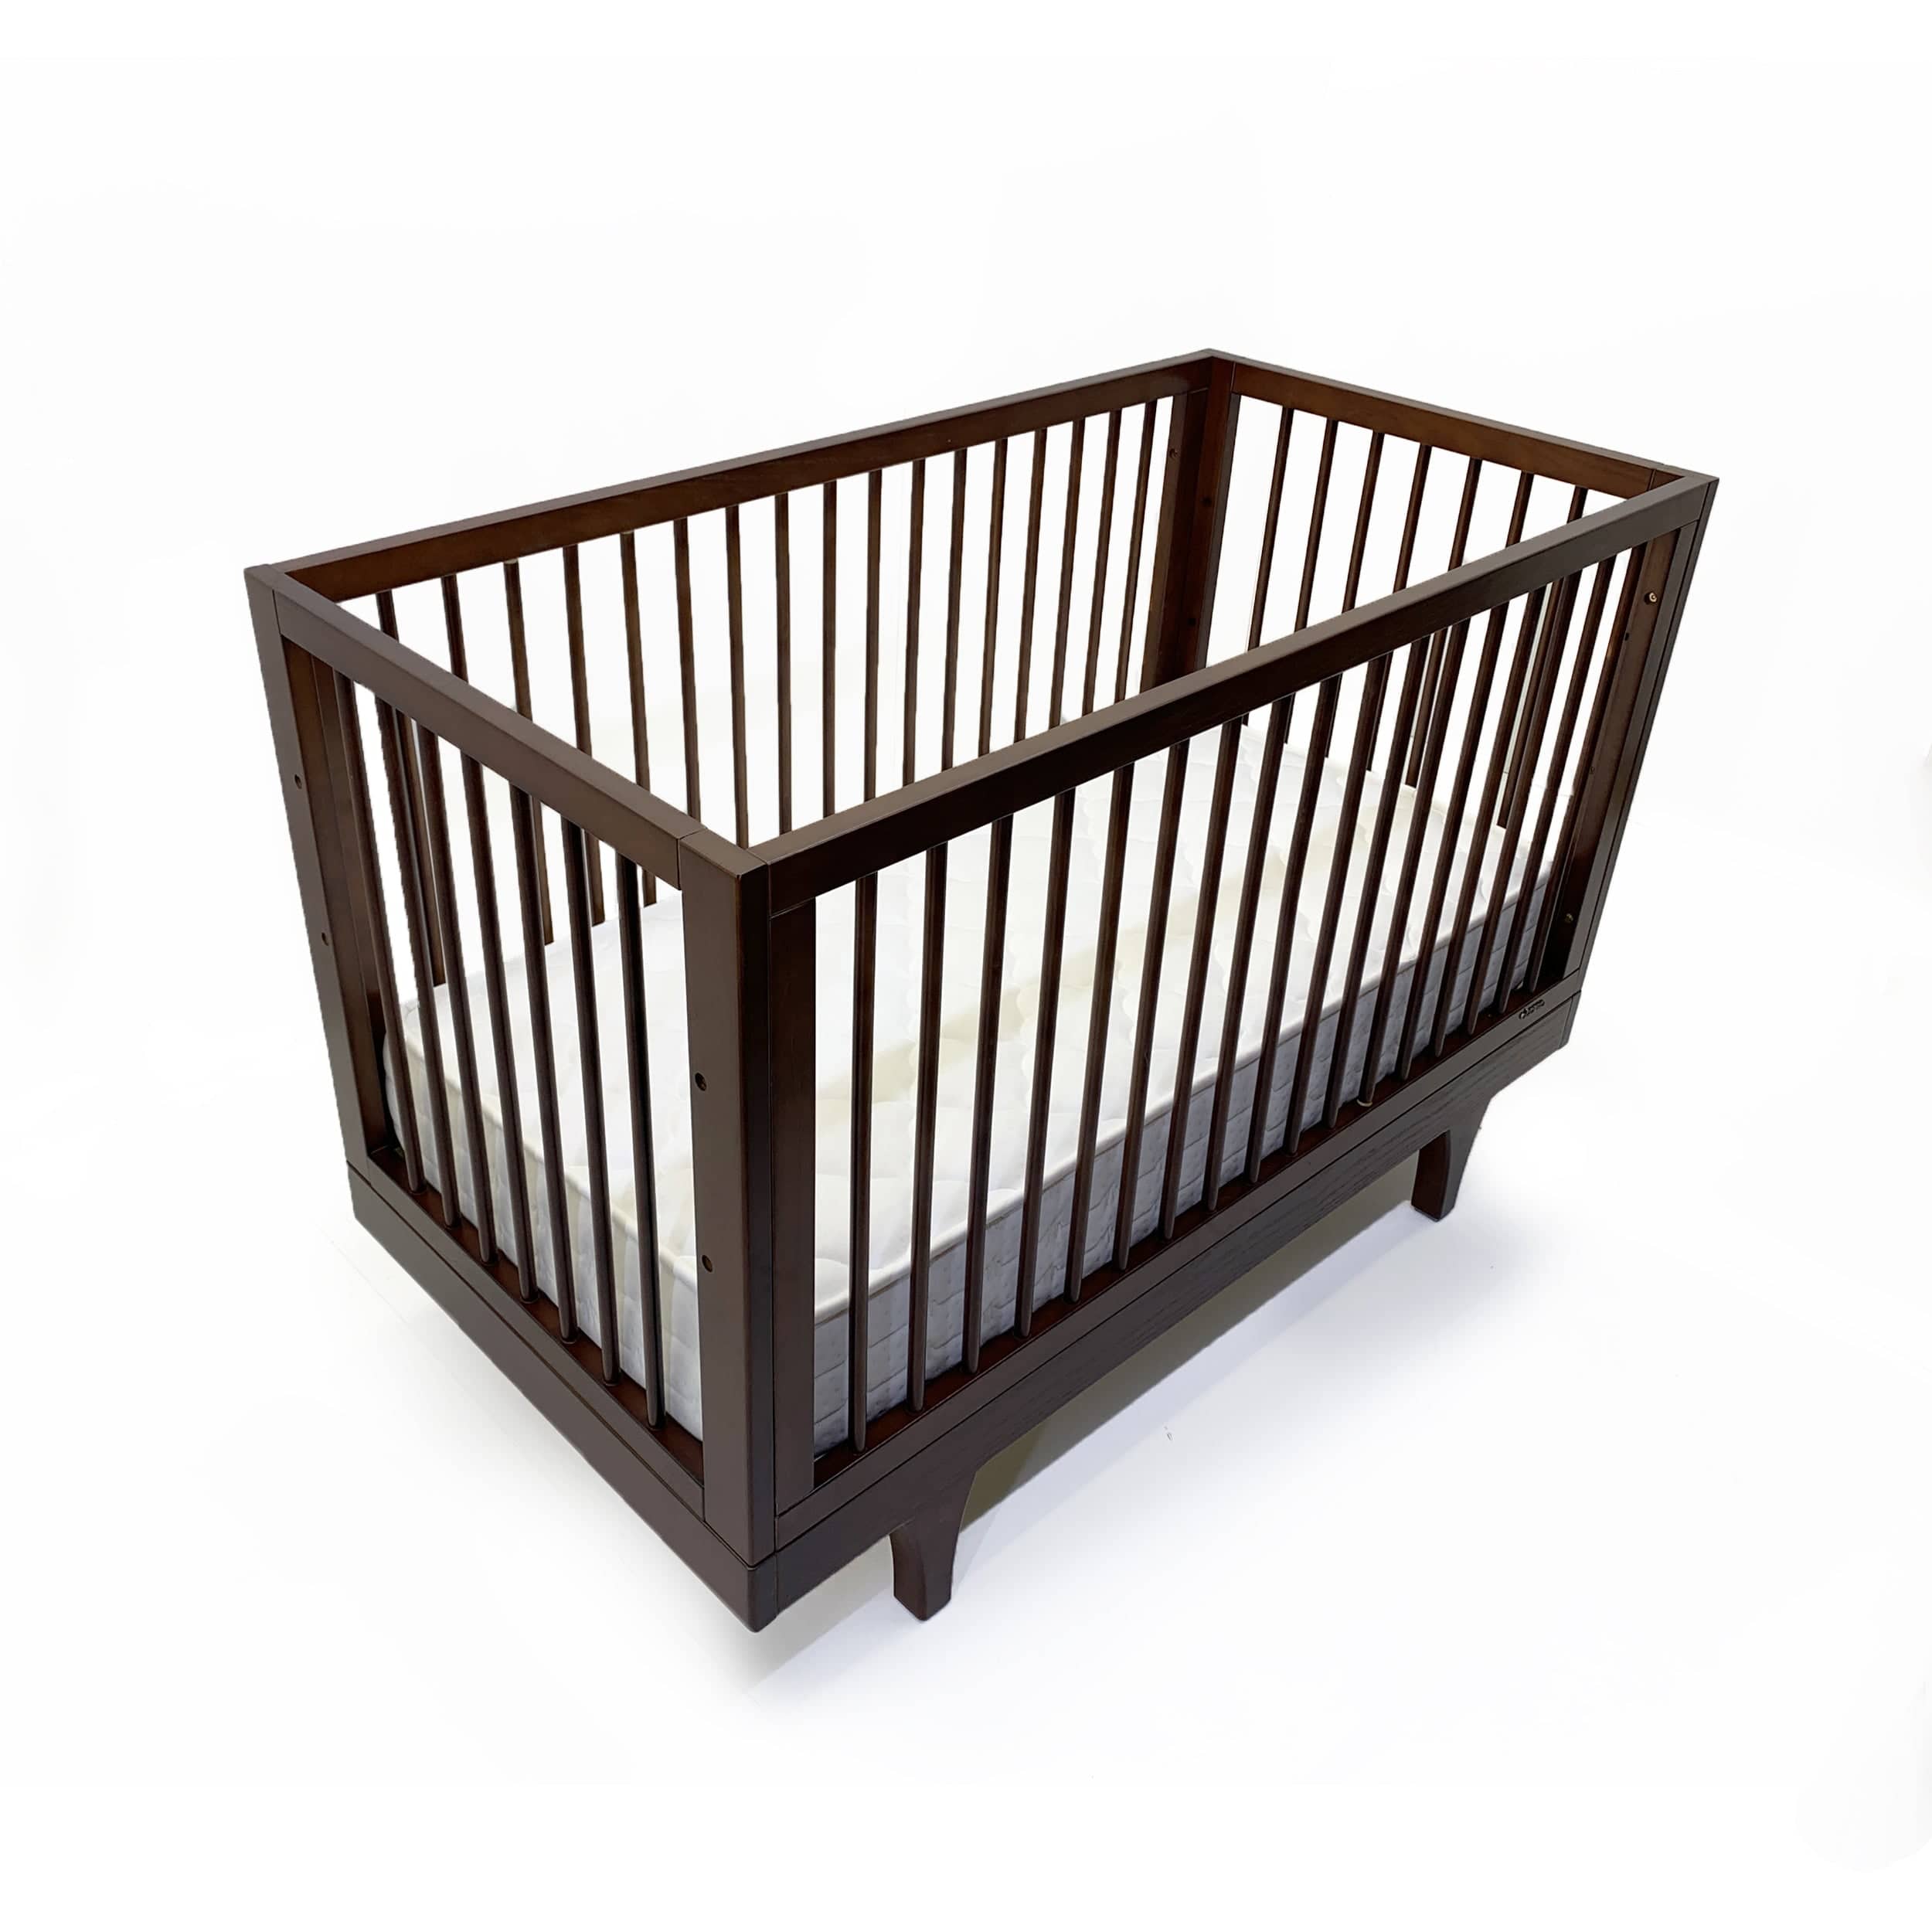 Baby Crib Et-Y005-W -  Cribs | سرير الطفل - ebarza Furniture UAE | Shop Modern Furniture in Abu Dhabi & Dubai - مفروشات ايبازرا في الامارات | تسوق اثاث عصري وديكورات مميزة في دبي وابوظبي